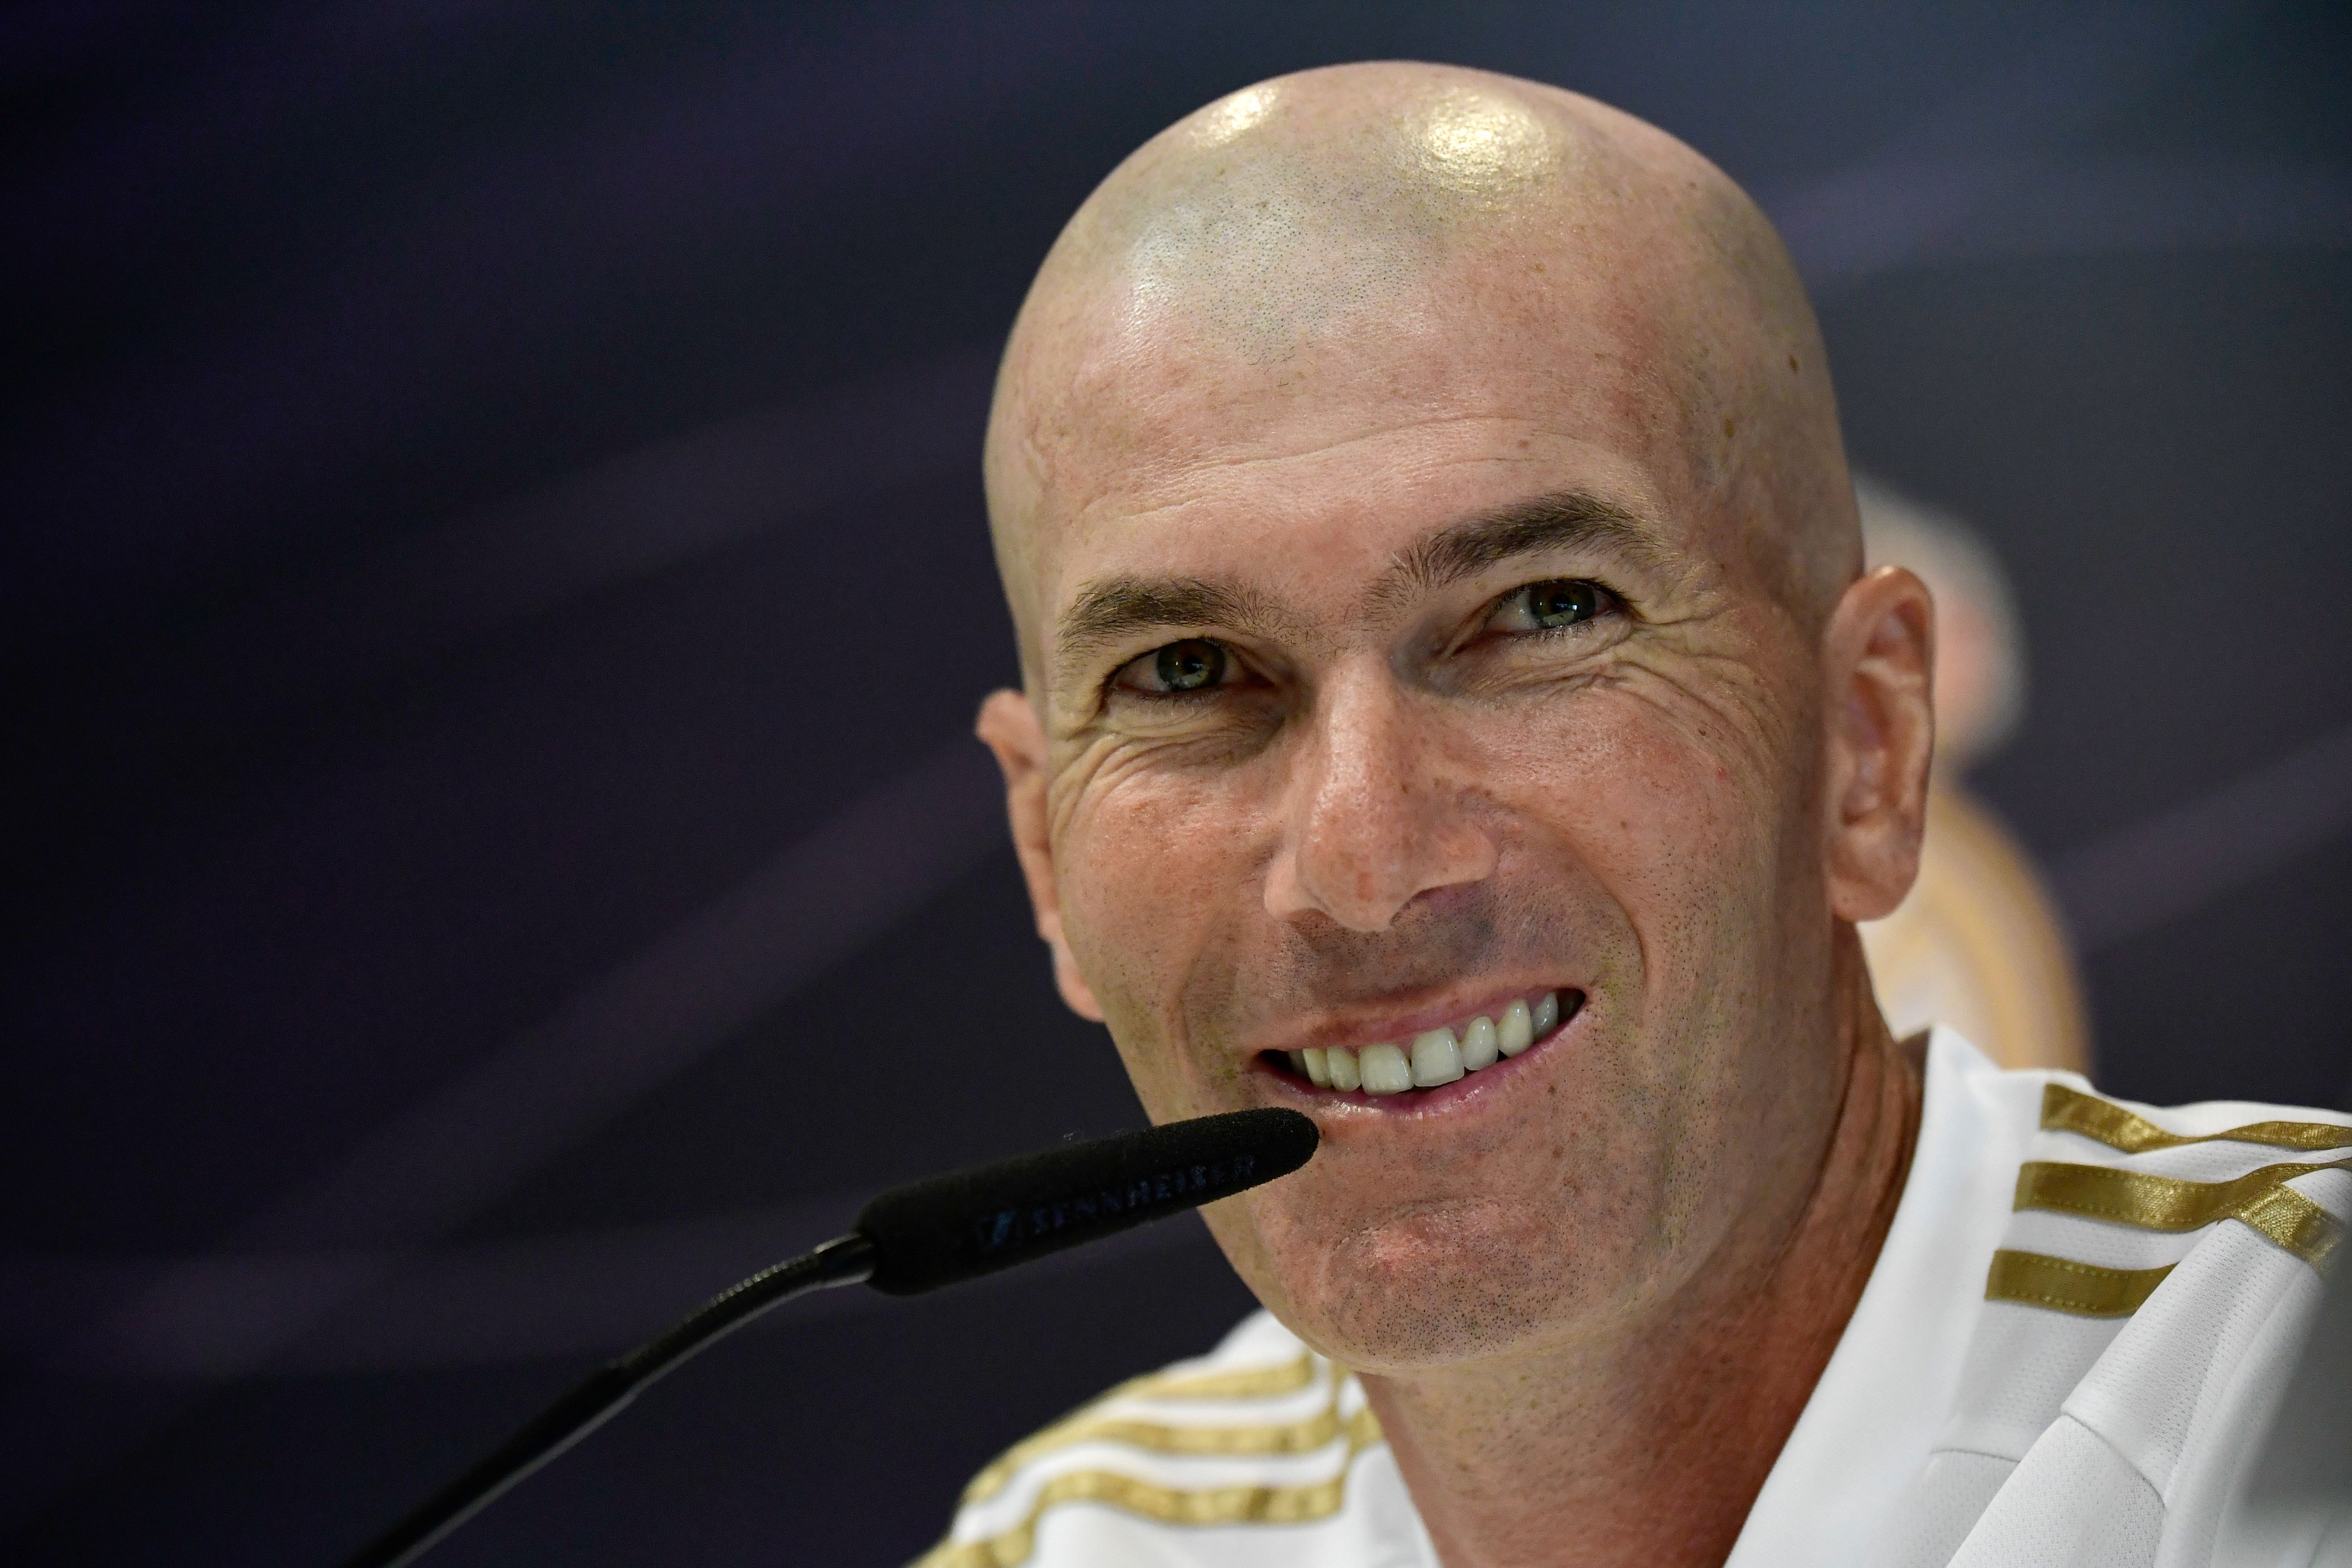 Zinedine Zidane - HQ Images x 60 (Part3)